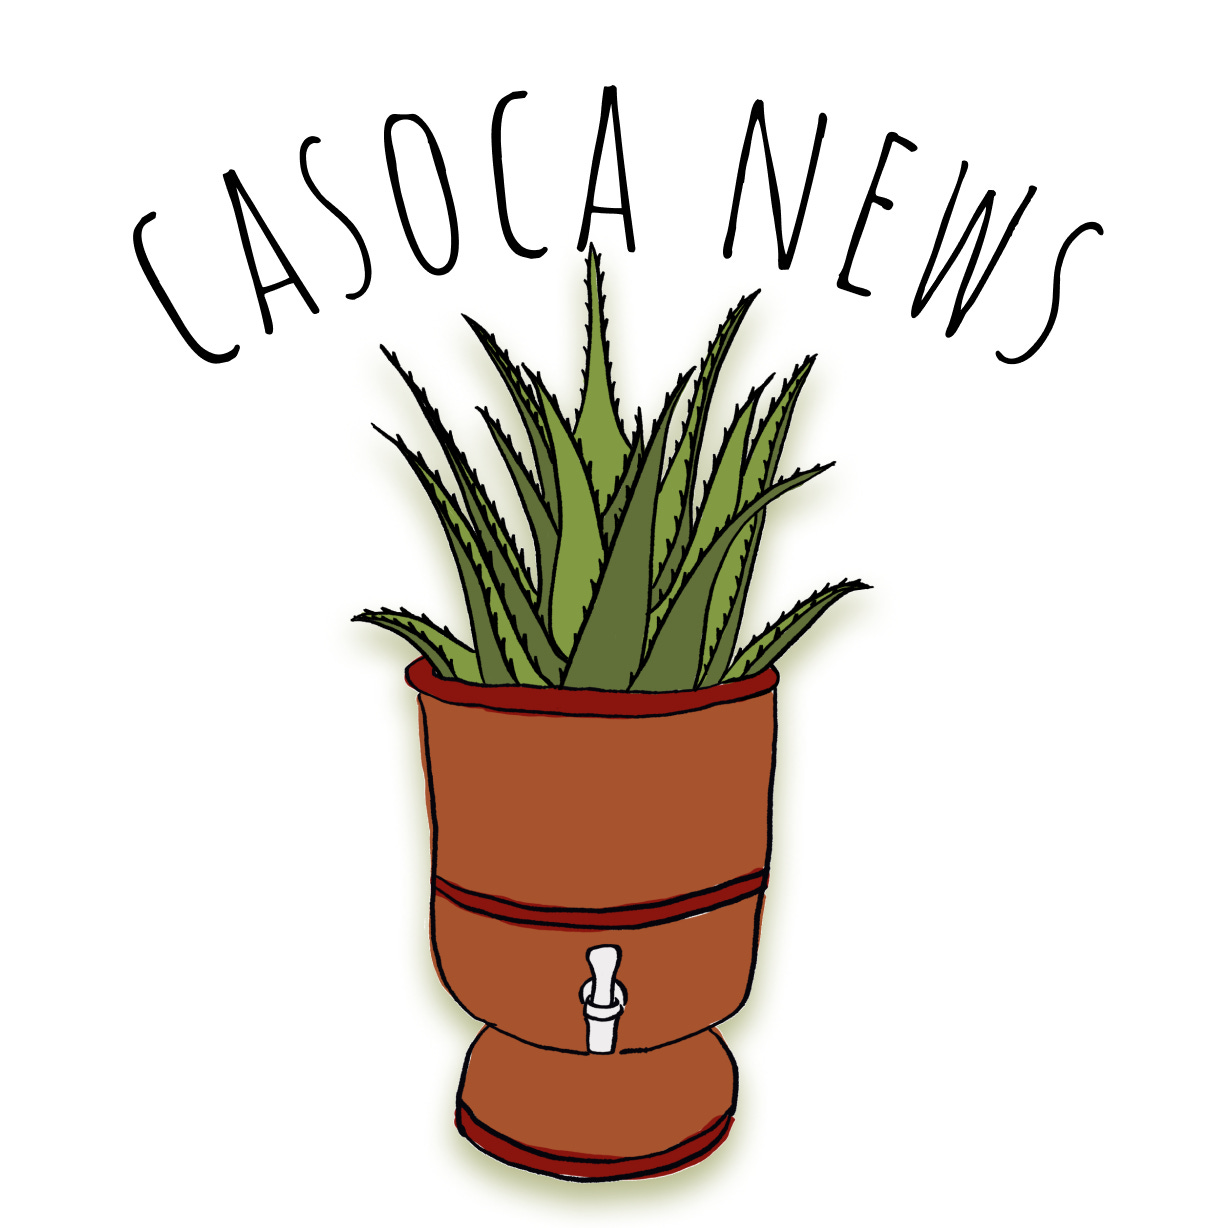 Artwork for casoca news